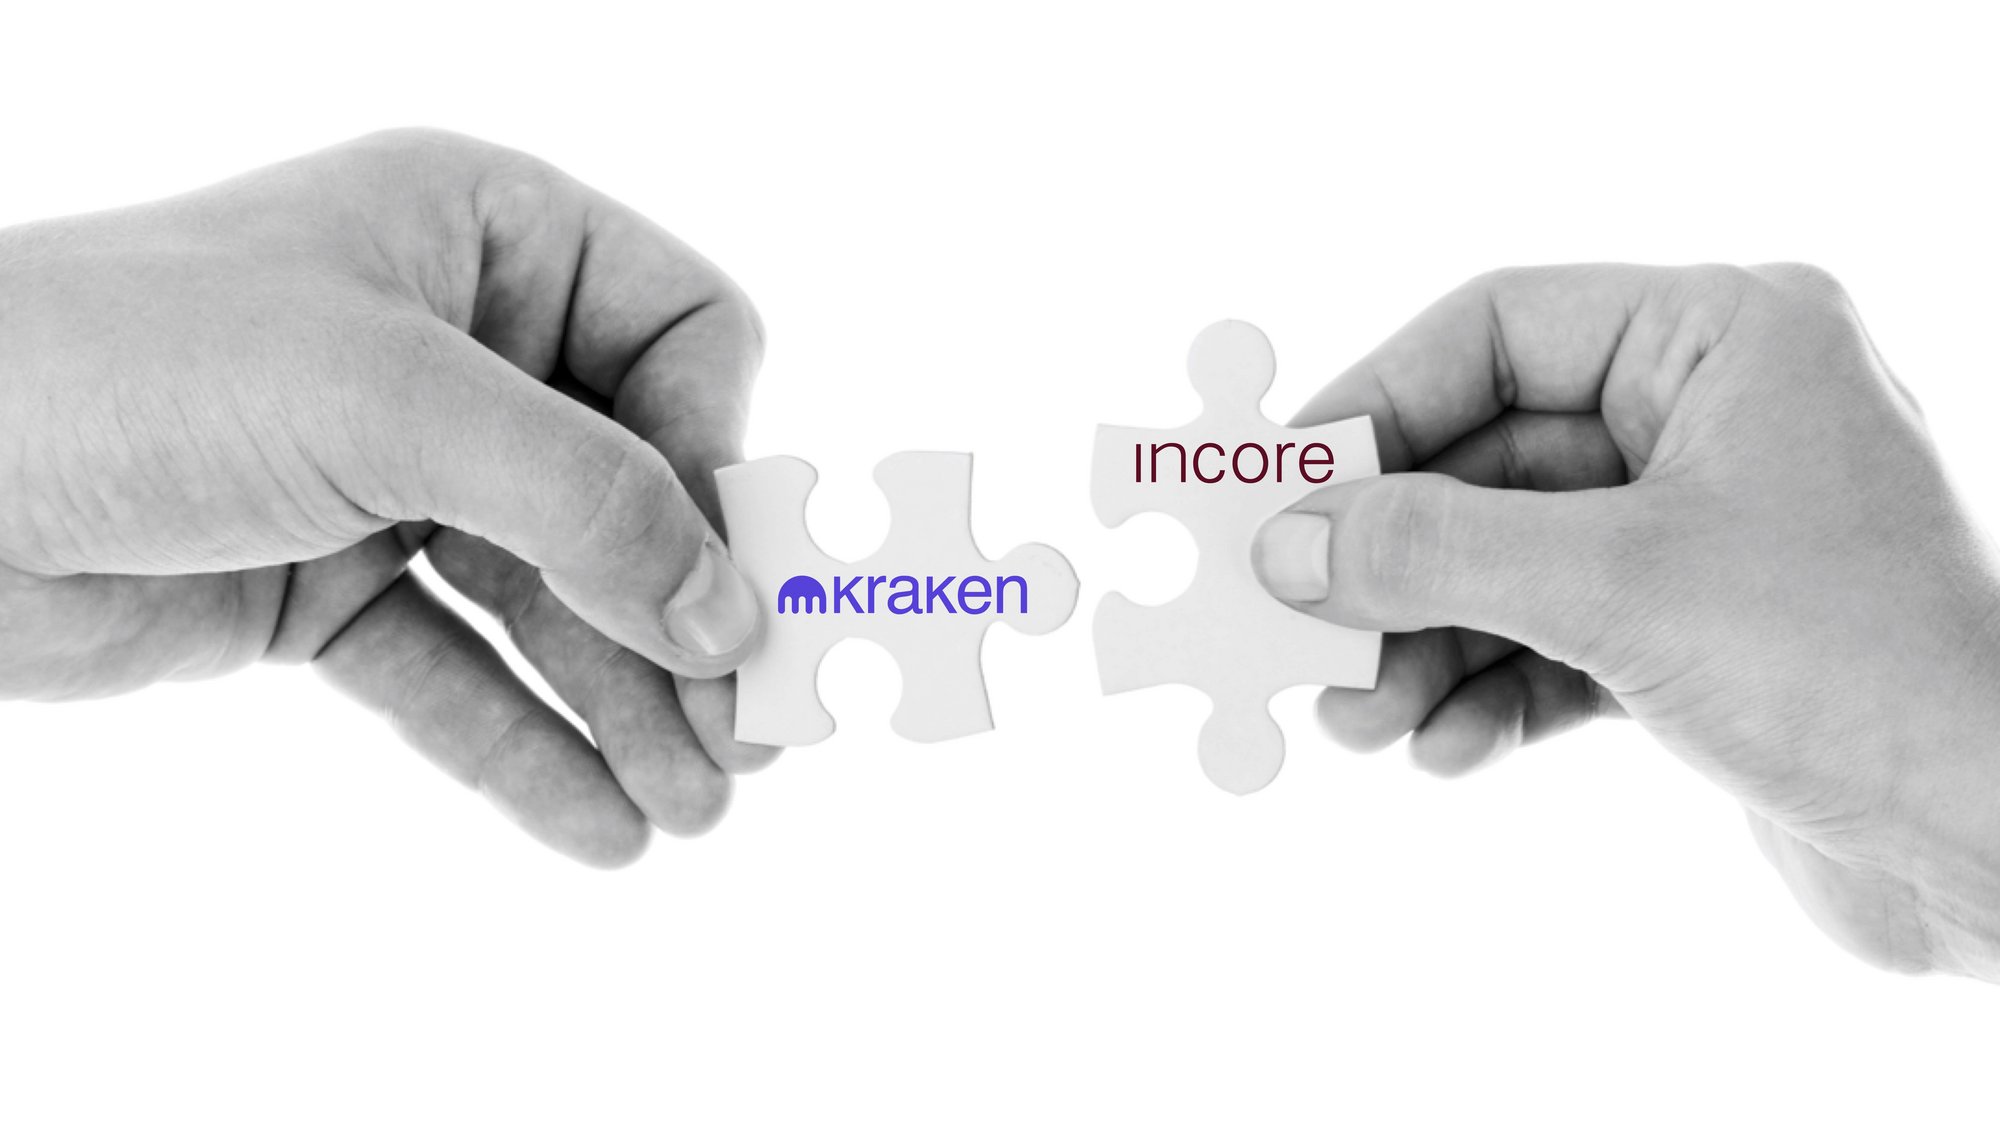 InCore Bank kooperiert mit Kraken, eine der weltweit führenden Kryptobörsen